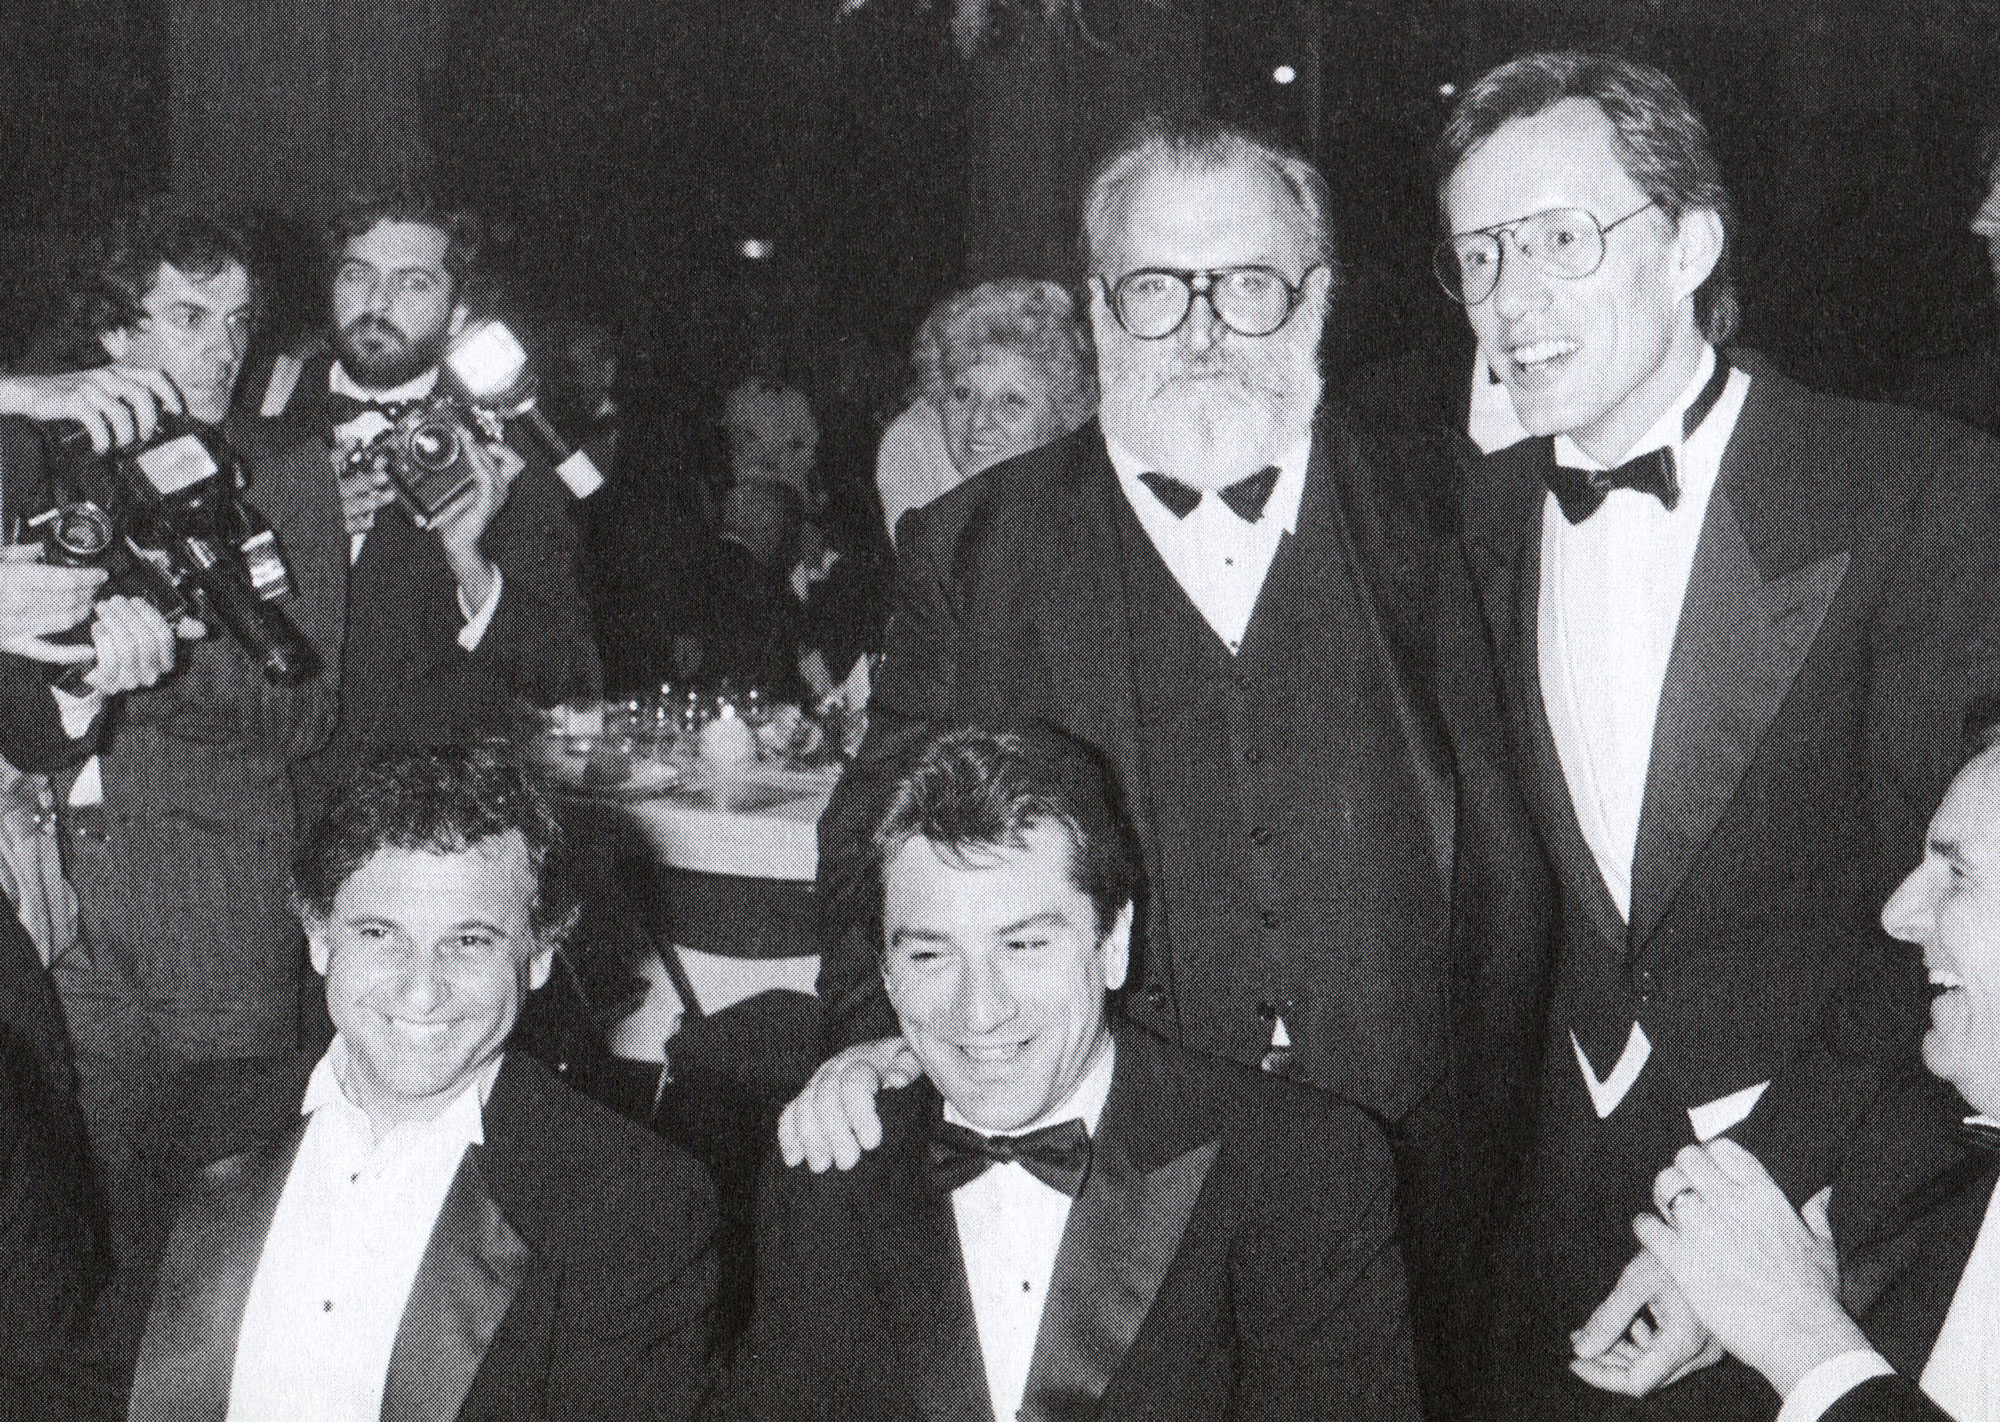 Foto di gruppo alla cena per C'era una volta in America: Sergio Leone, James Woods, Joe Pesci, Robert De Niro, Danny Aiello